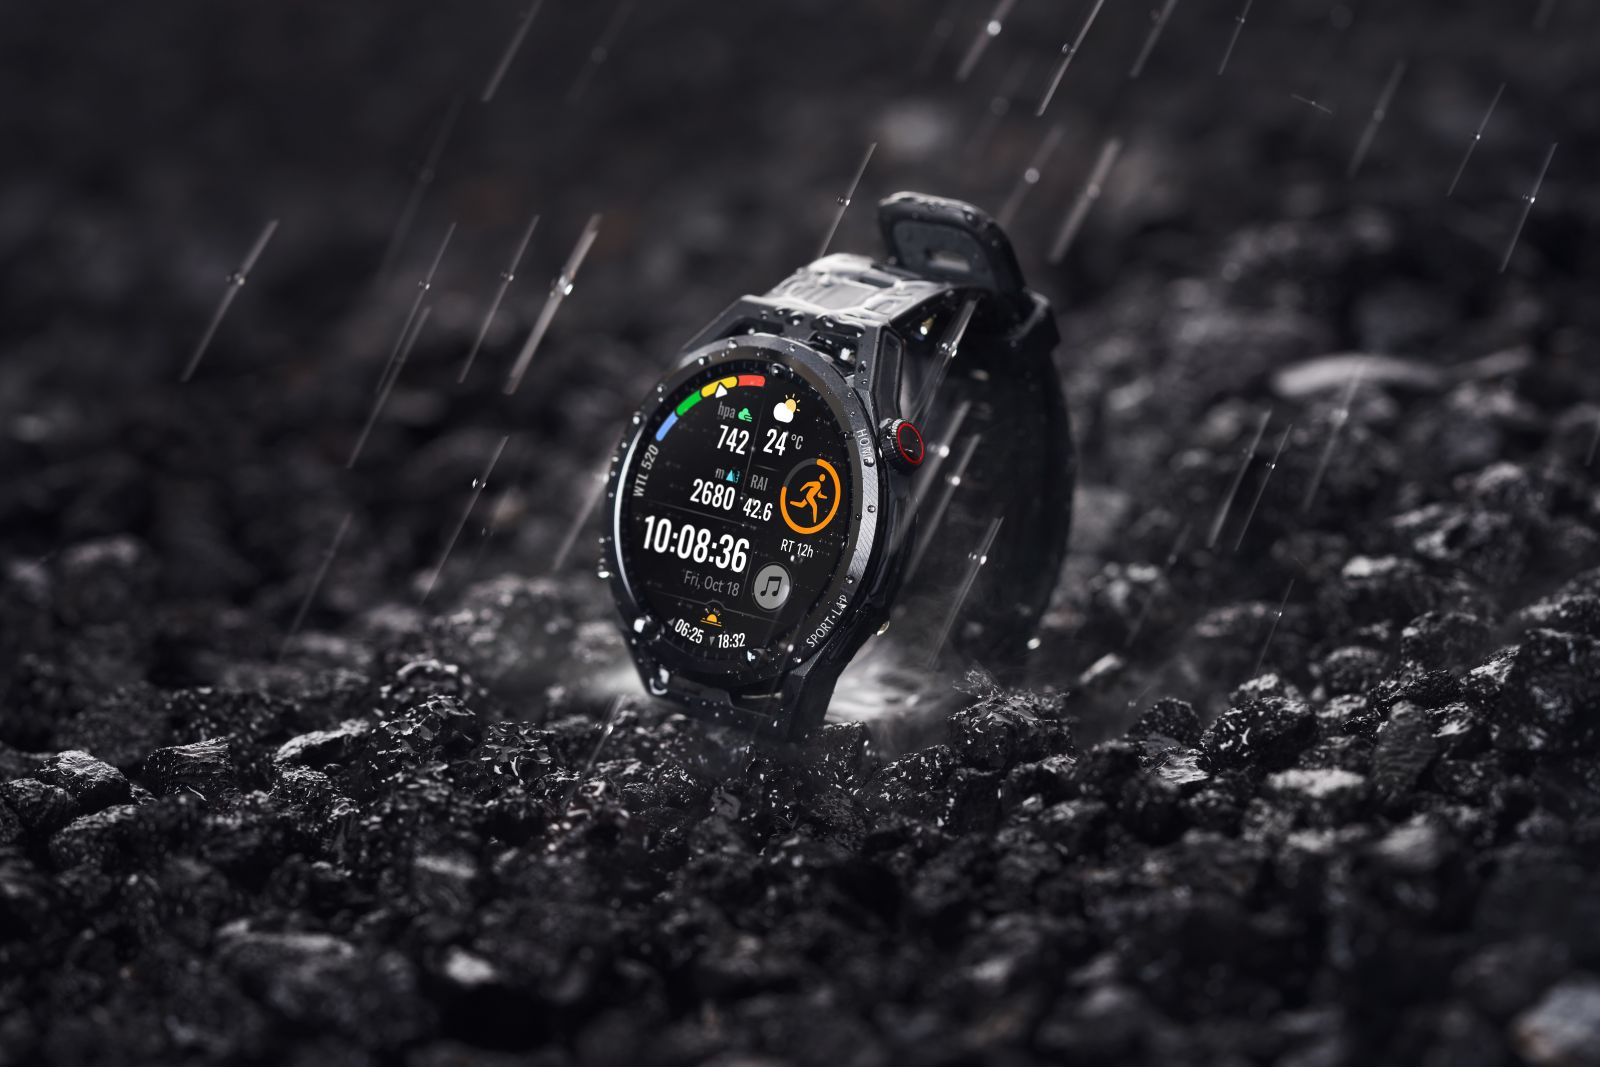 Watch GT Runner: Prvé bežecké hodinky od Huawei prichádzajú na Slovensko (video)